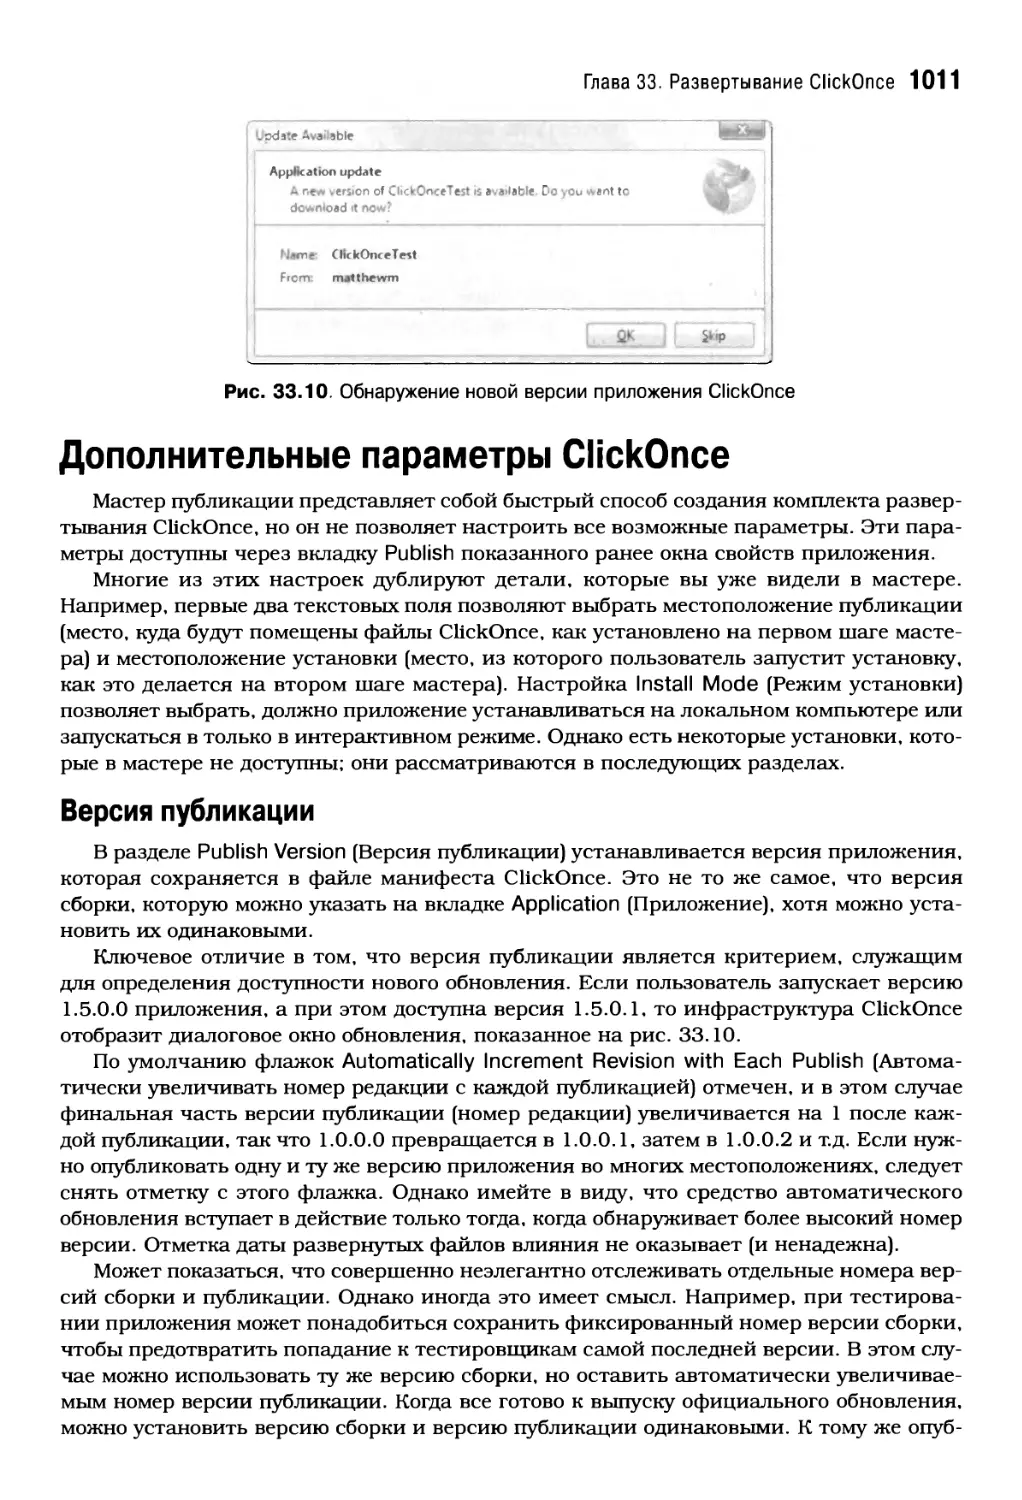 Дополнительные параметры ClickOnce